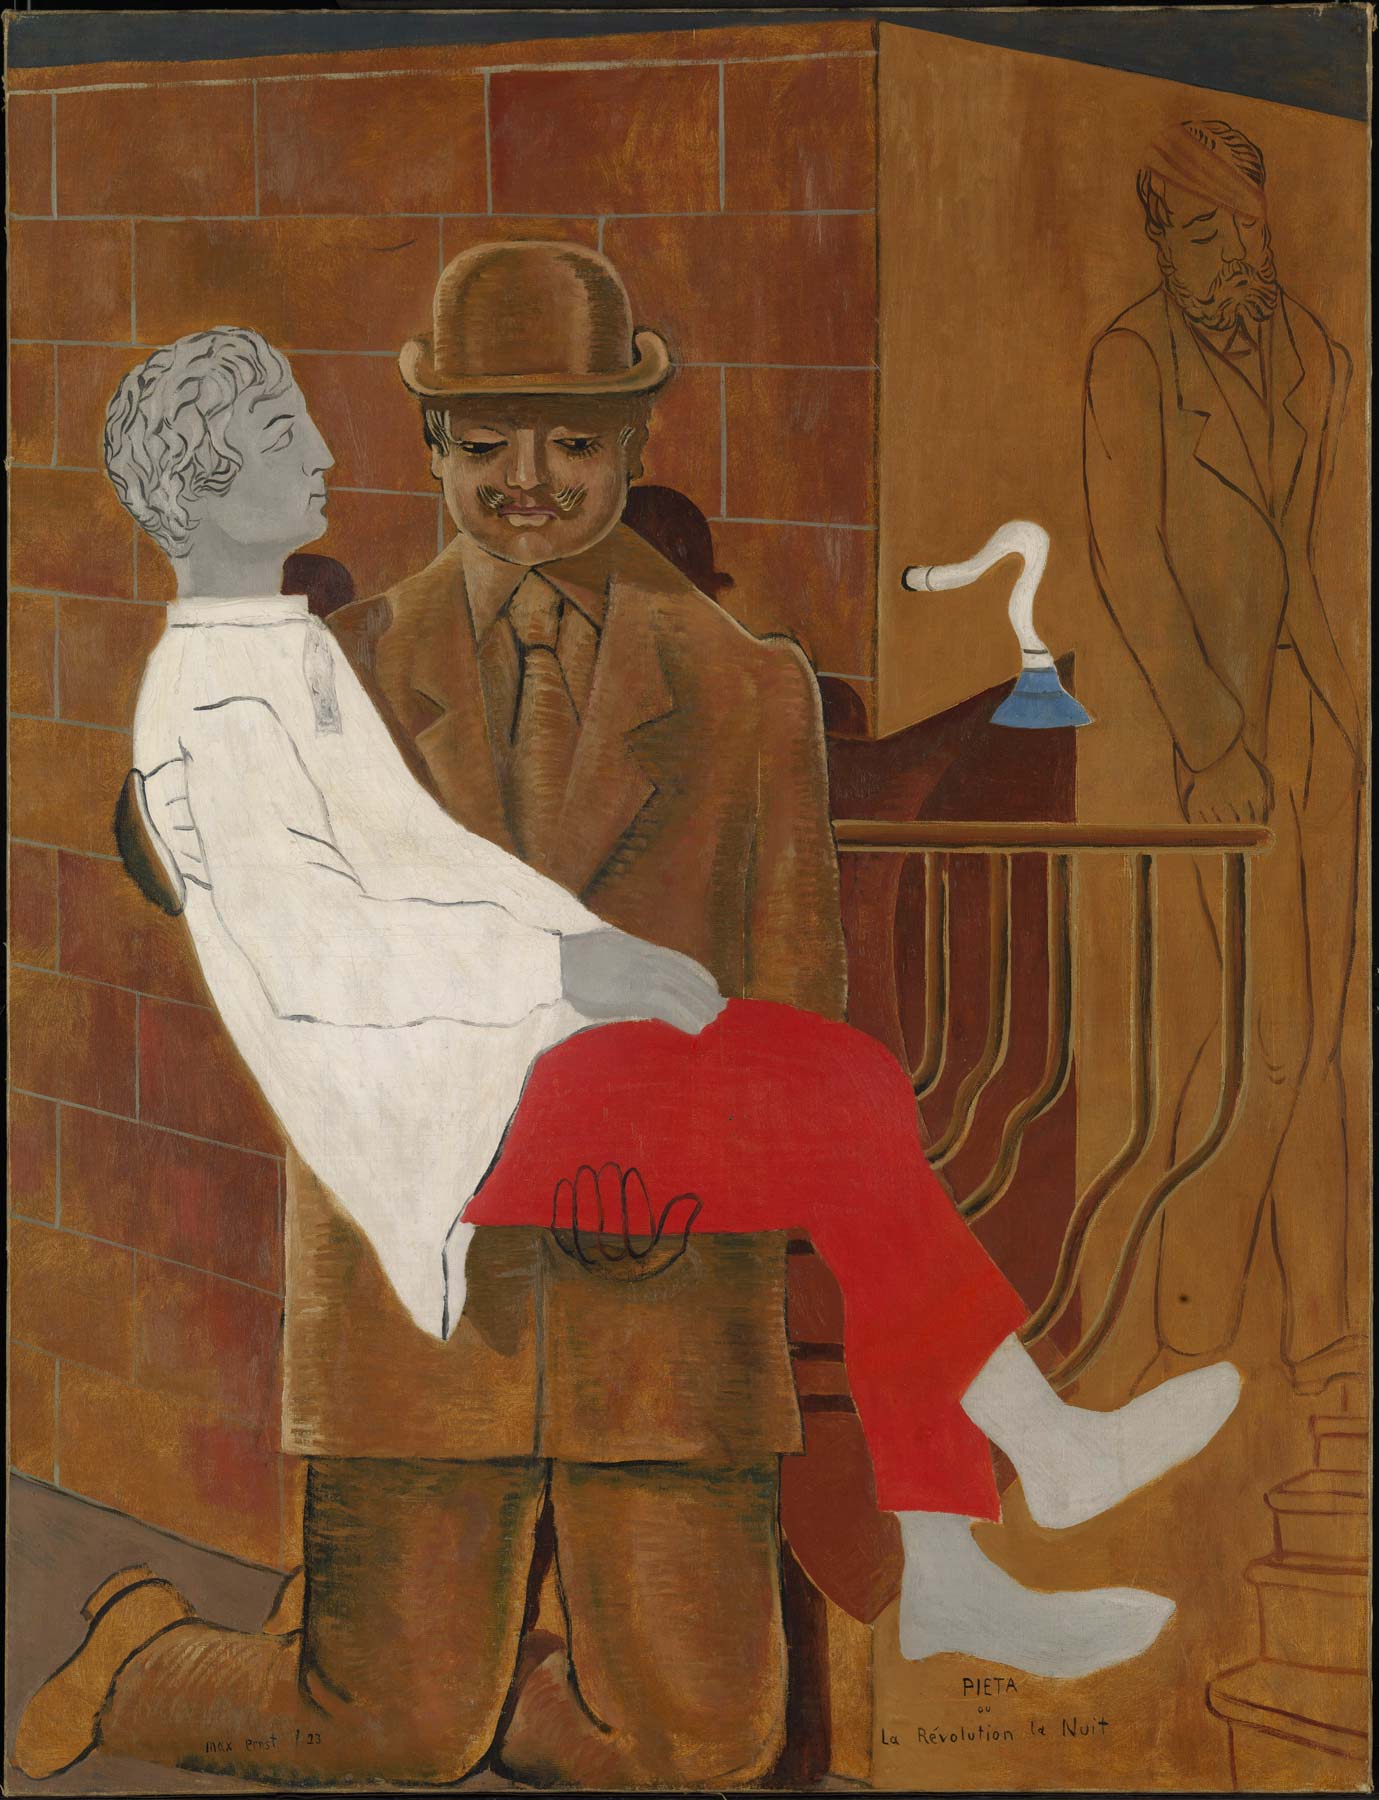 Max Ernst, Pietà o La rivoluzione la notte (1923; Olio su tela, 116,2 x 88,9 cm; Londra, Tate)
